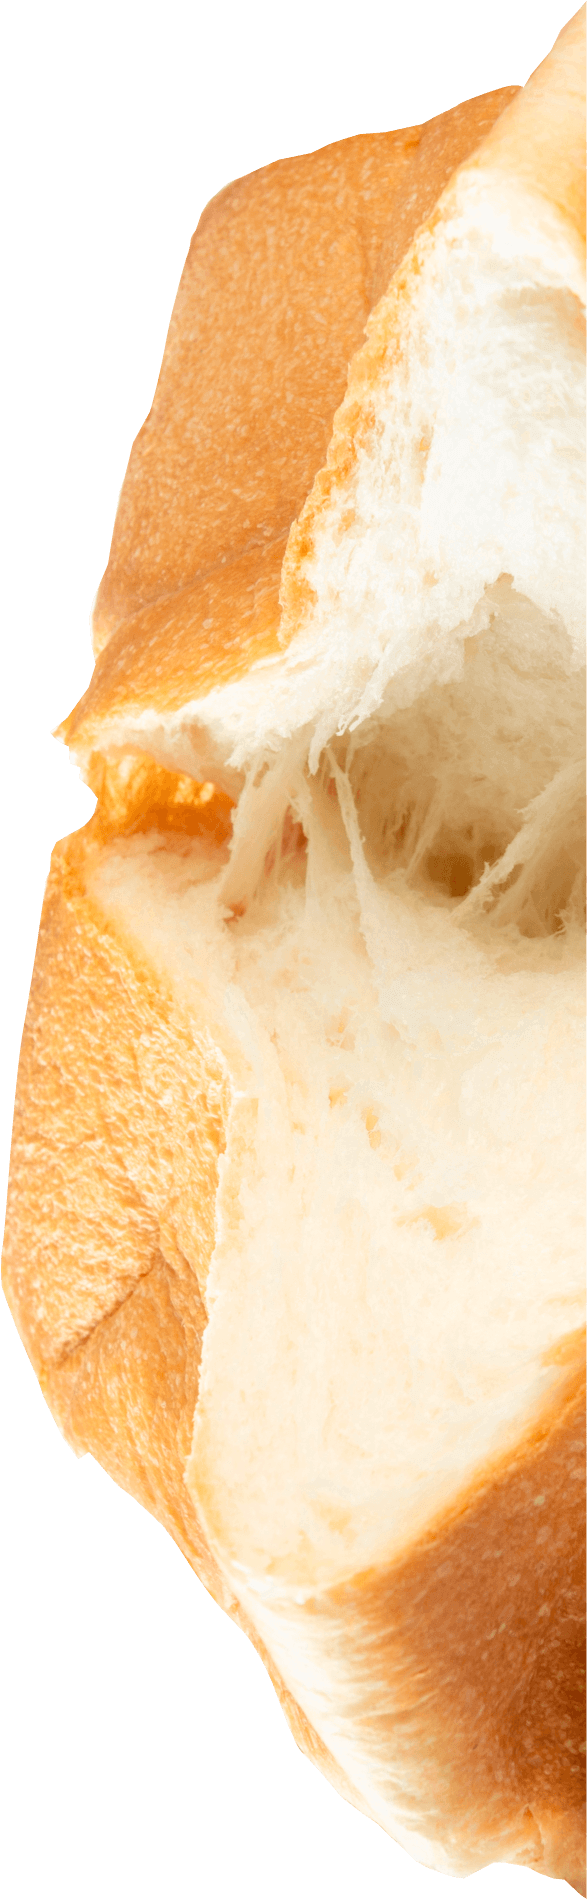 高級食パン 塩二郎のイメージ